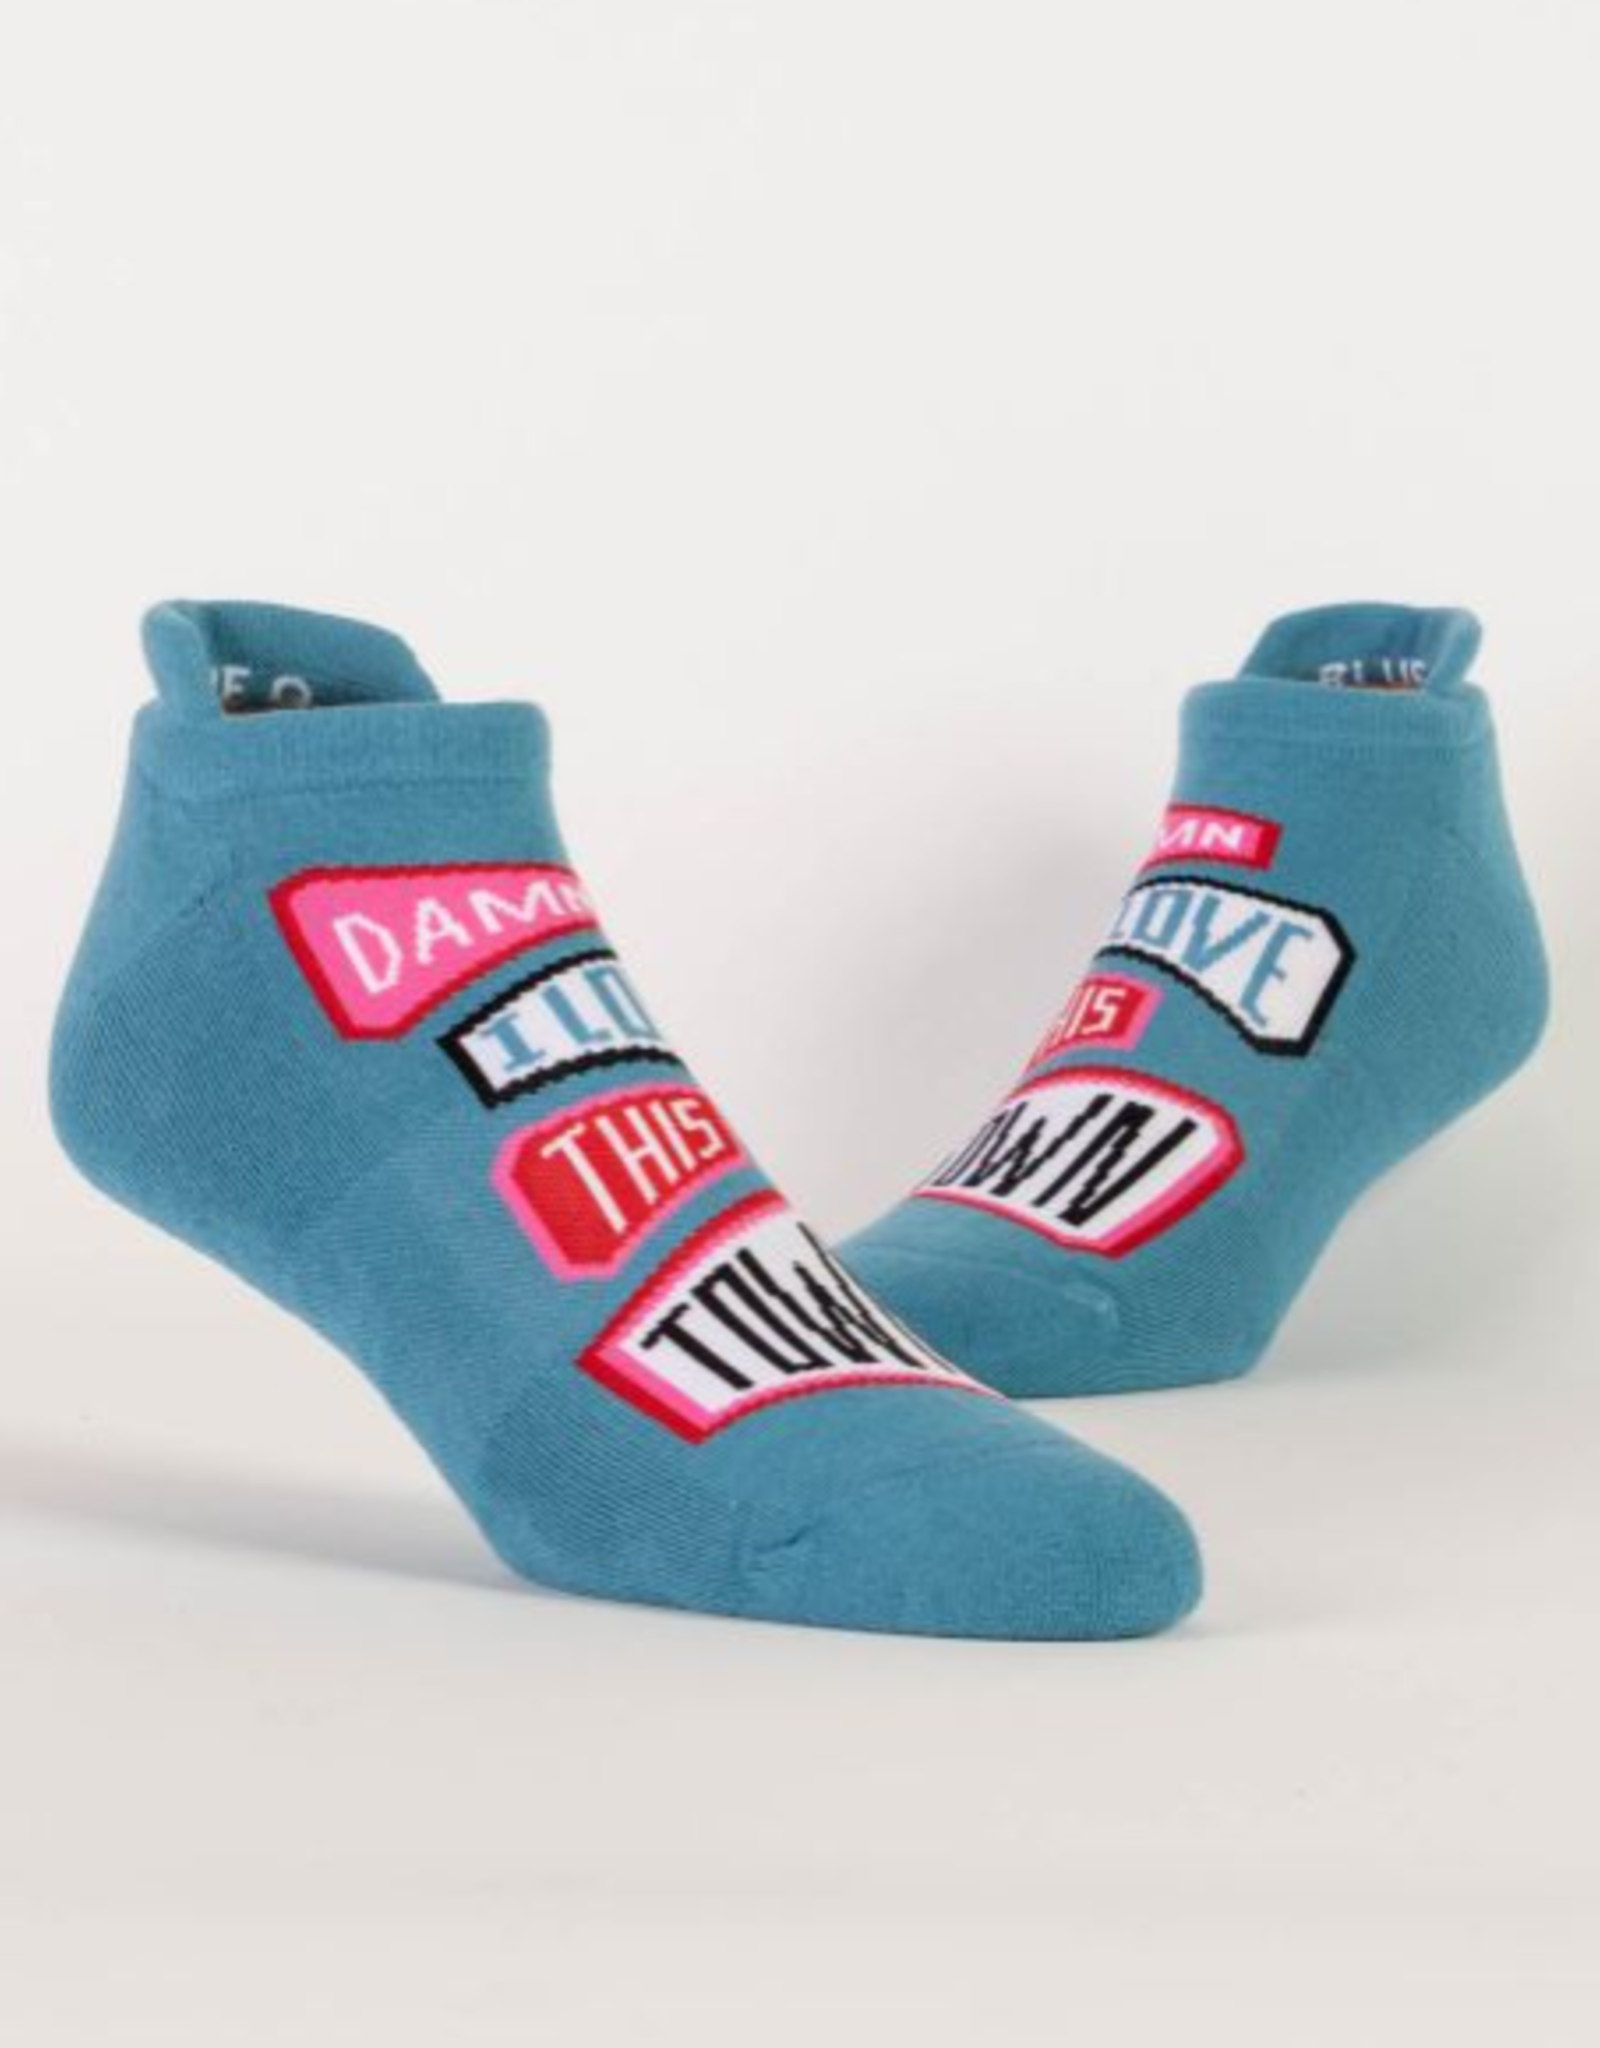 Blue Q Sneaker Socks